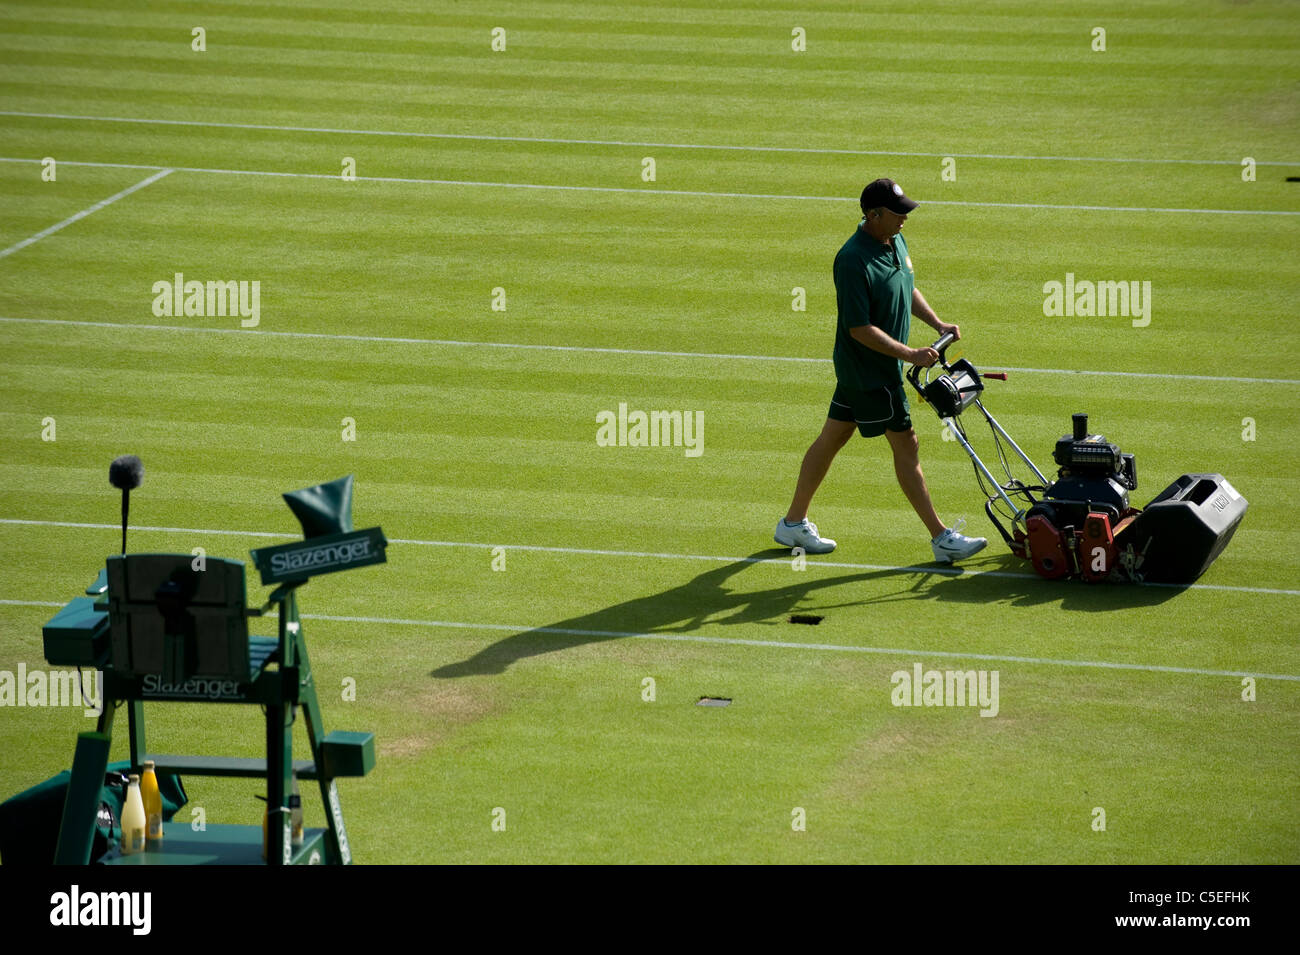 L'herbe sur le Court central est coupé pendant l'édition 2011 des Championnats de tennis de Wimbledon Banque D'Images